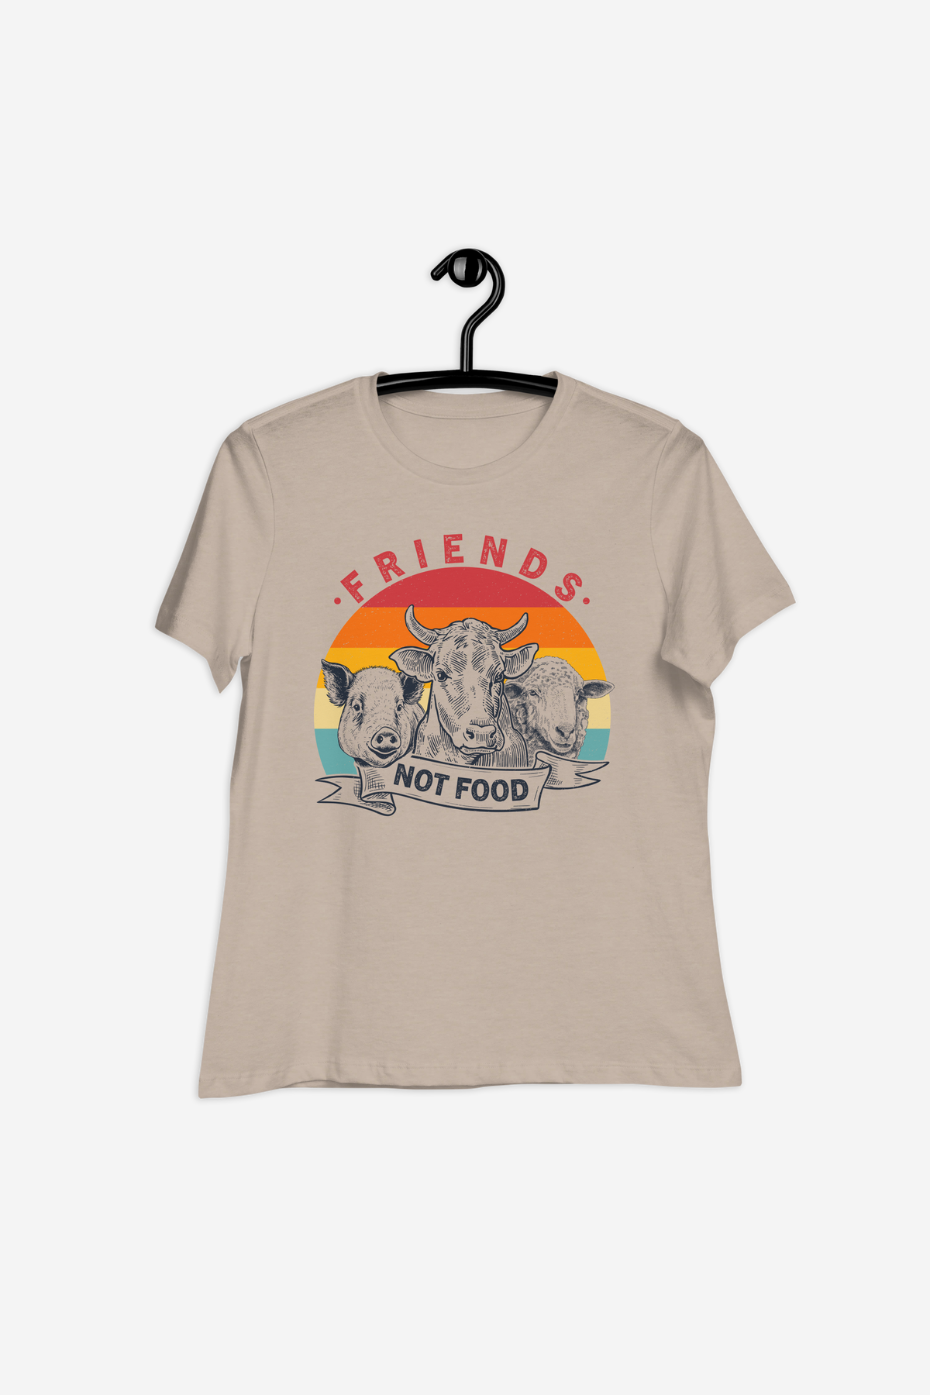 Friends Not Food Women's Relaxed T-Shirt